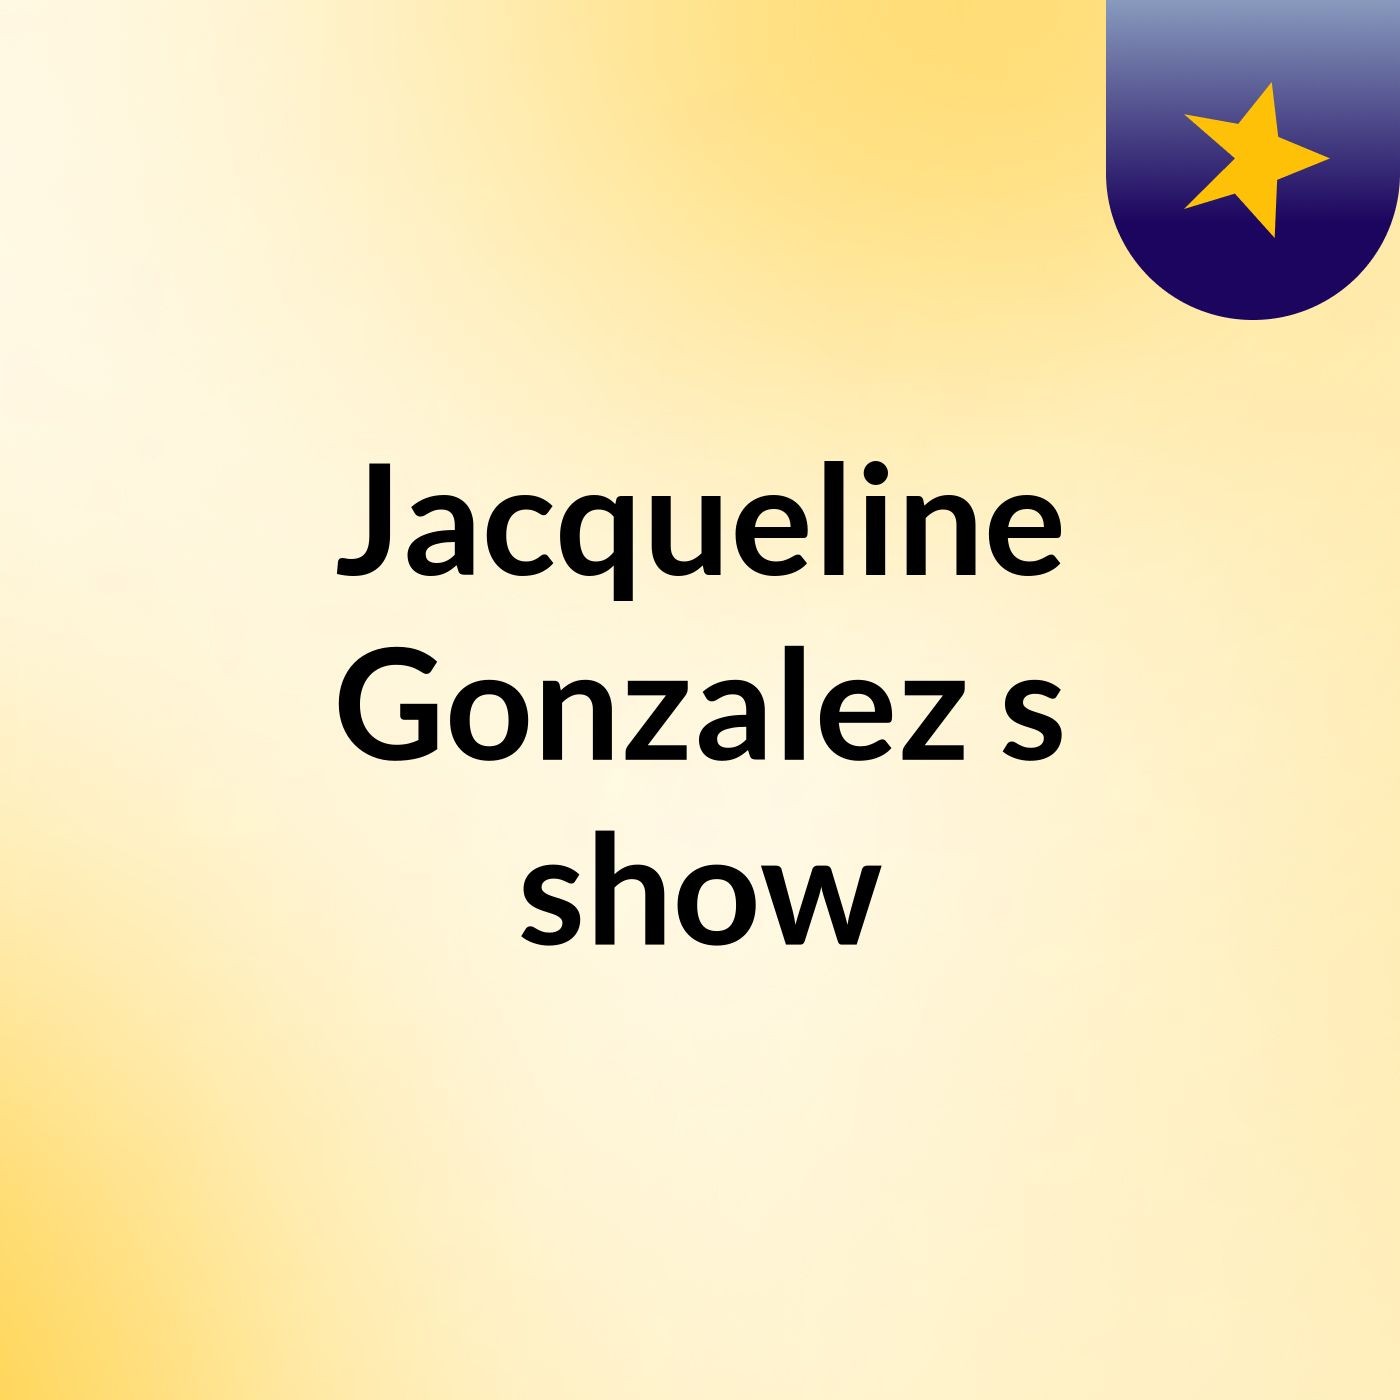 Jacqueline Gonzalez's show